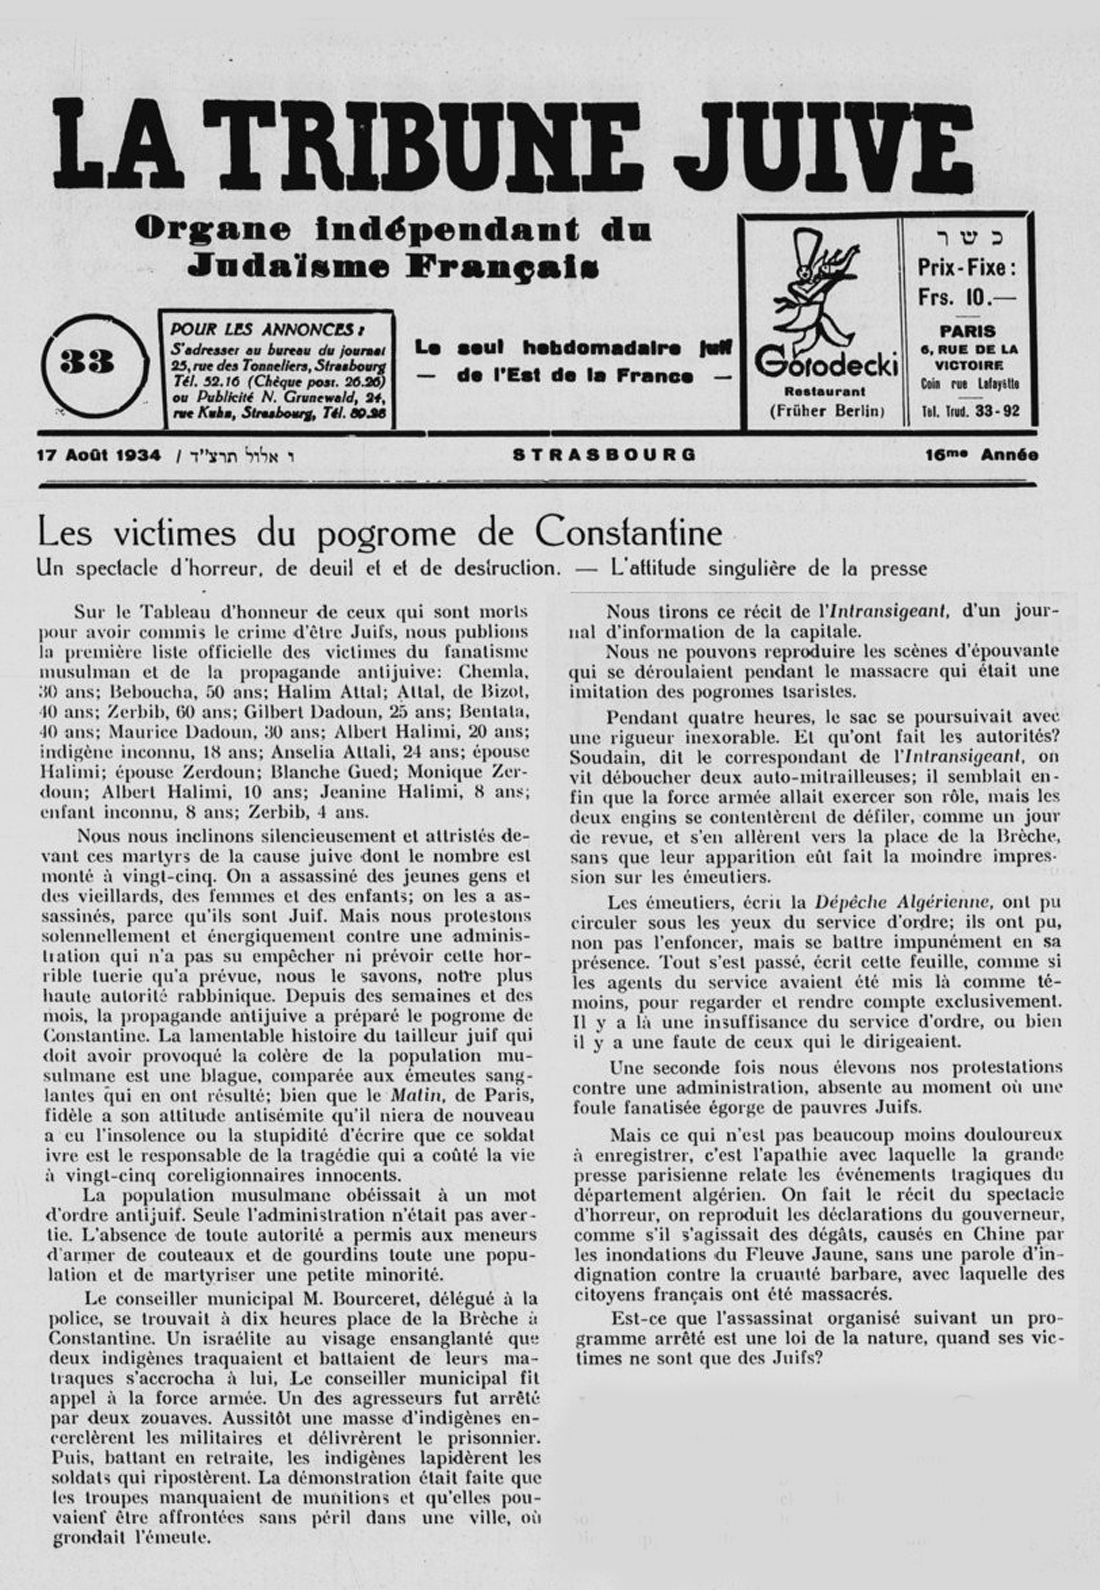 4 le pogrom de constantine 5 aout 1934